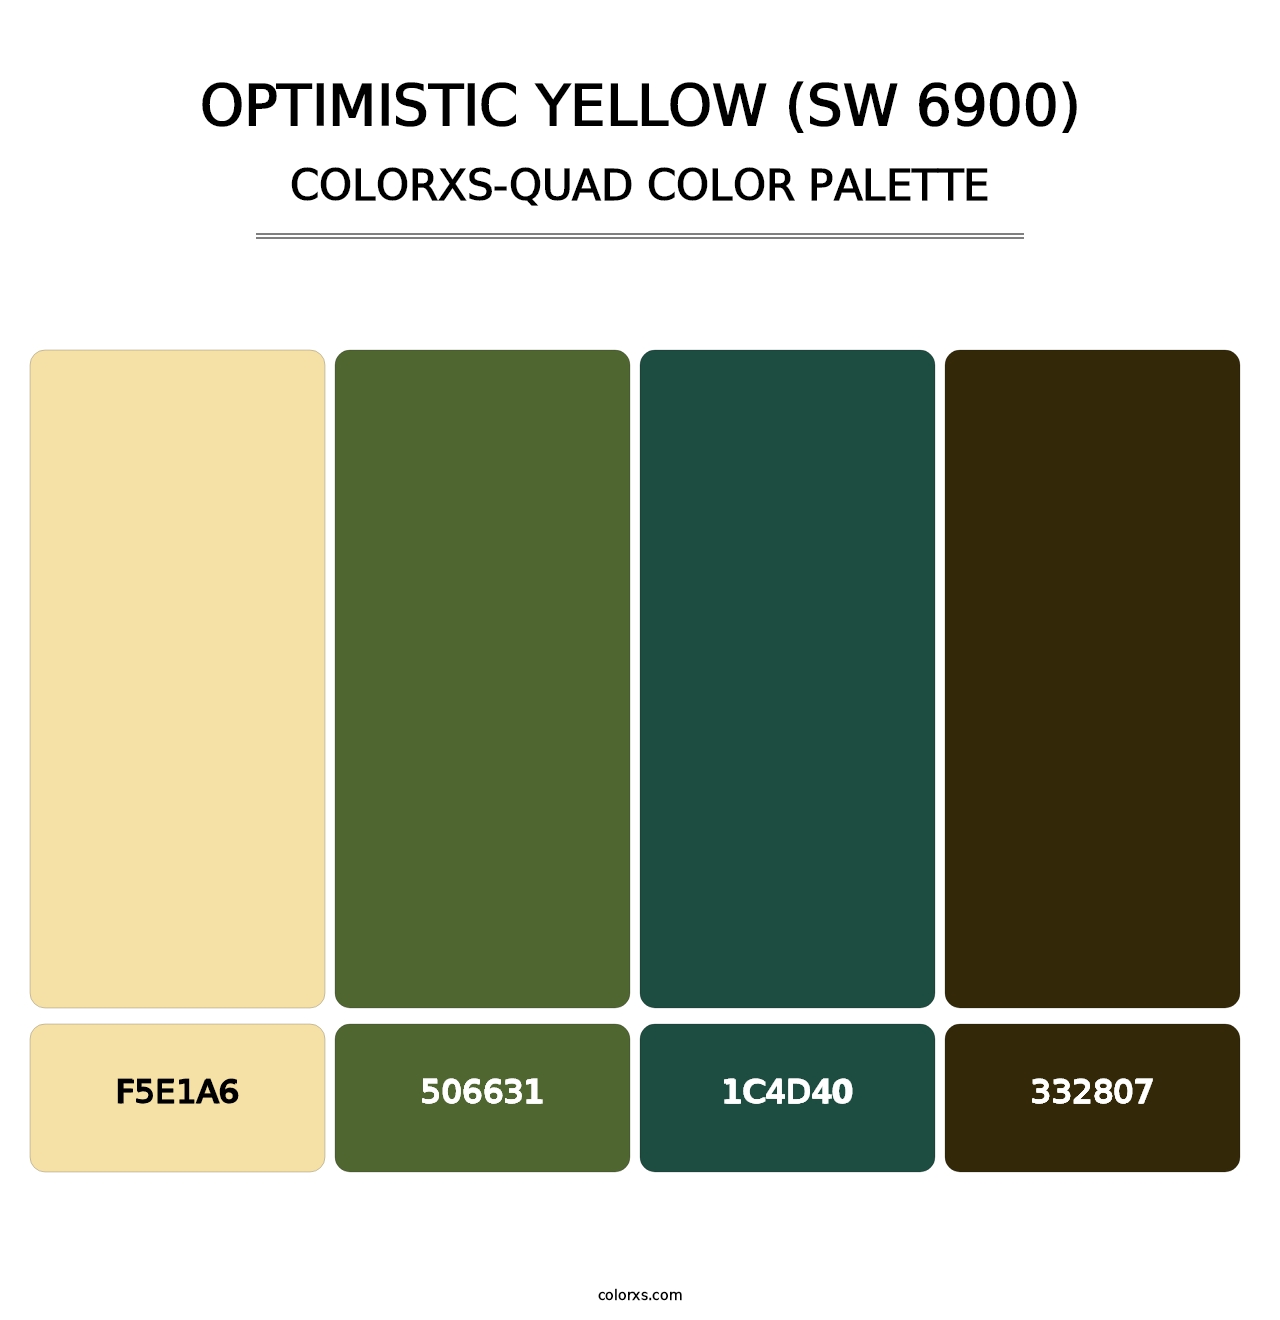 Optimistic Yellow (SW 6900) - Colorxs Quad Palette